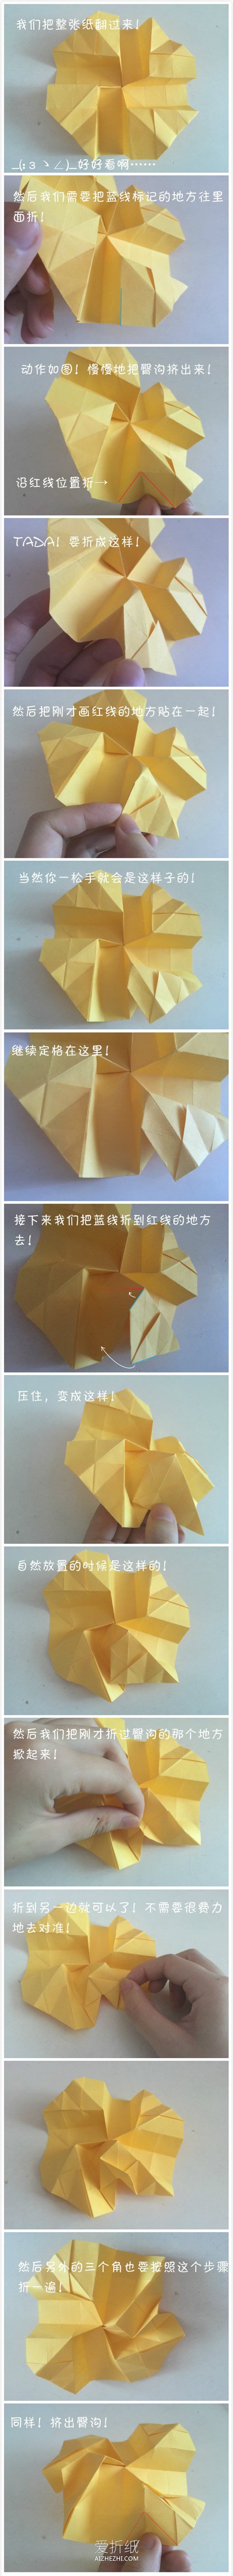 怎么折纸立体川崎玫瑰的折法图解- www.aizhezhi.com